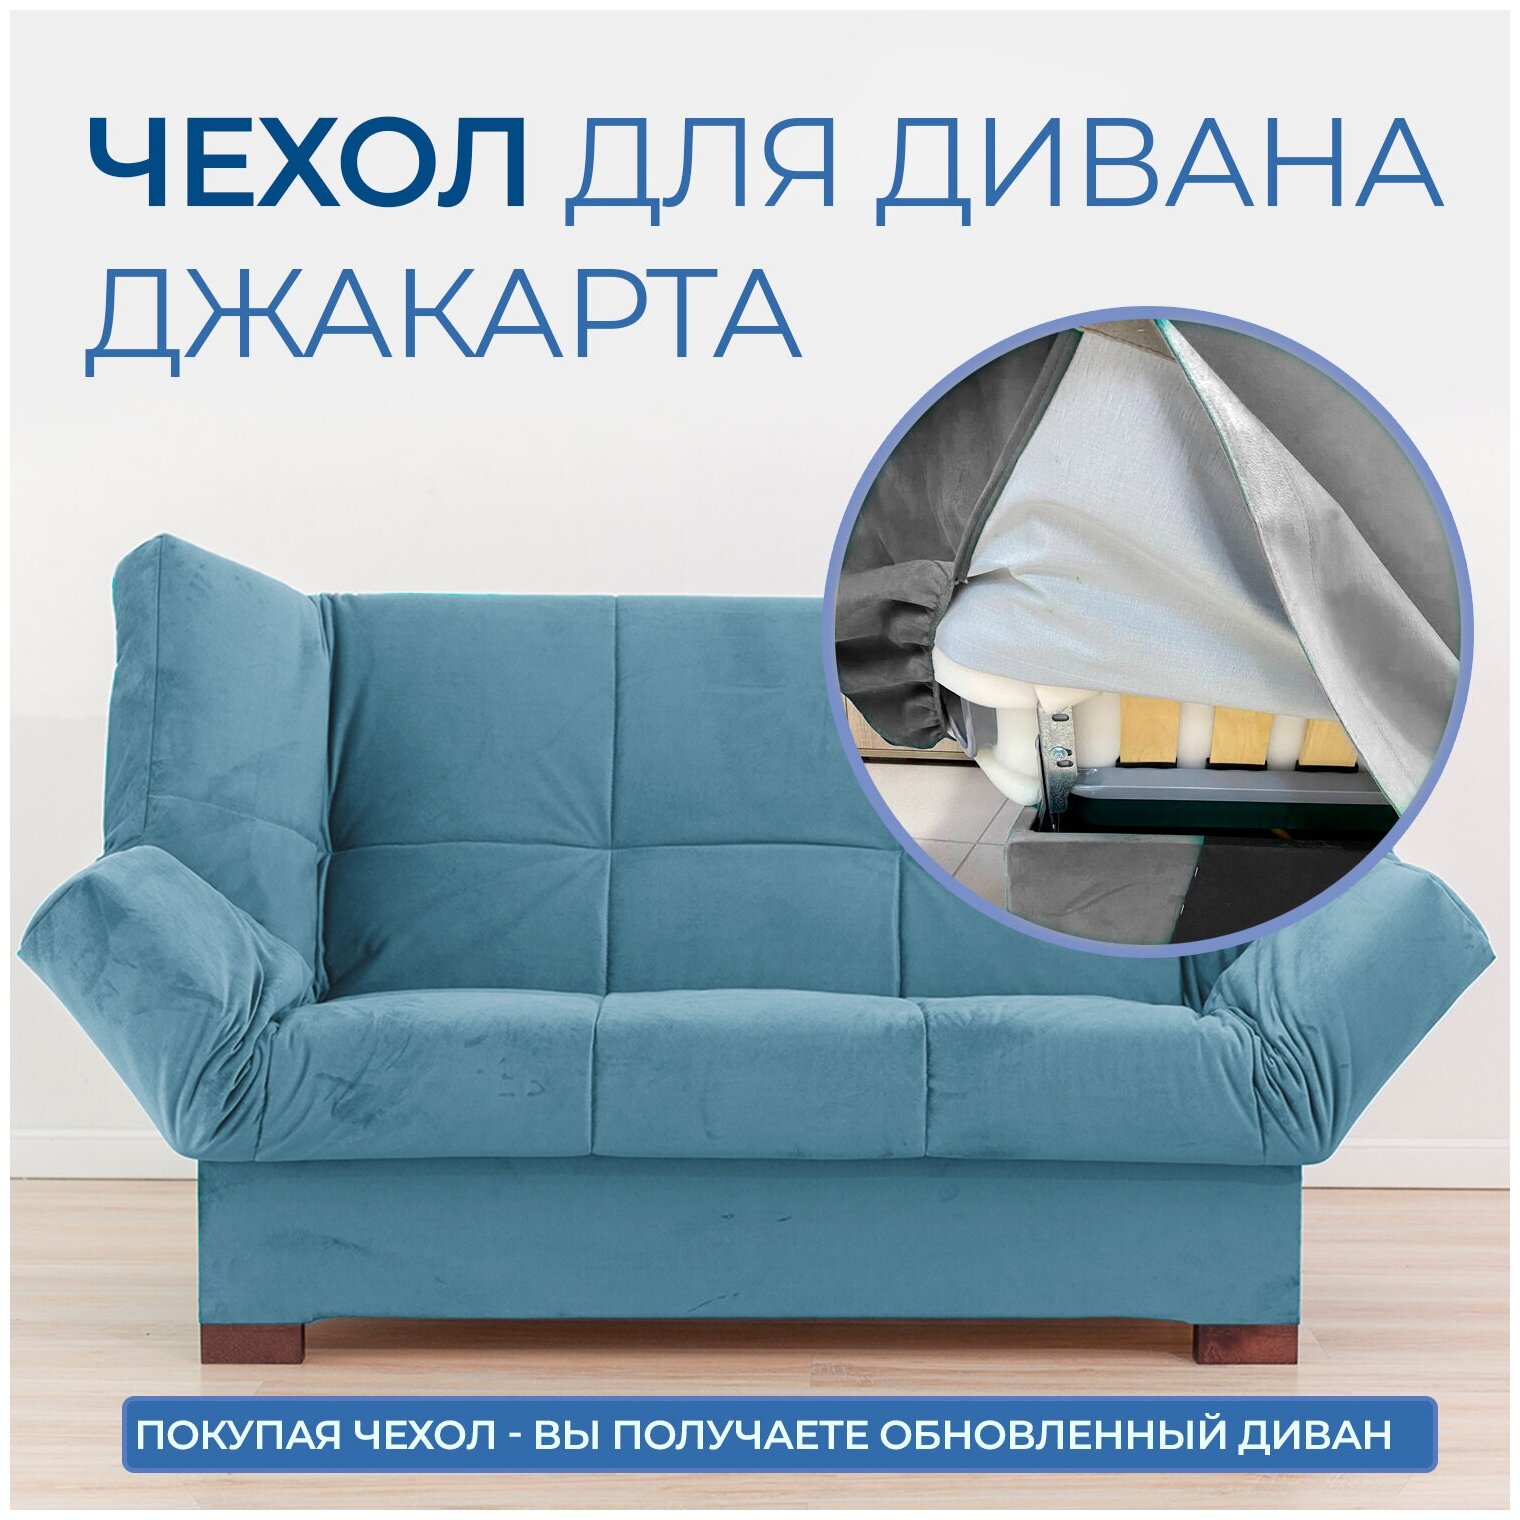 Чехол на прямой диван кровать Джакарта, механизм клик кляк, книжка, 205х135 см, синий